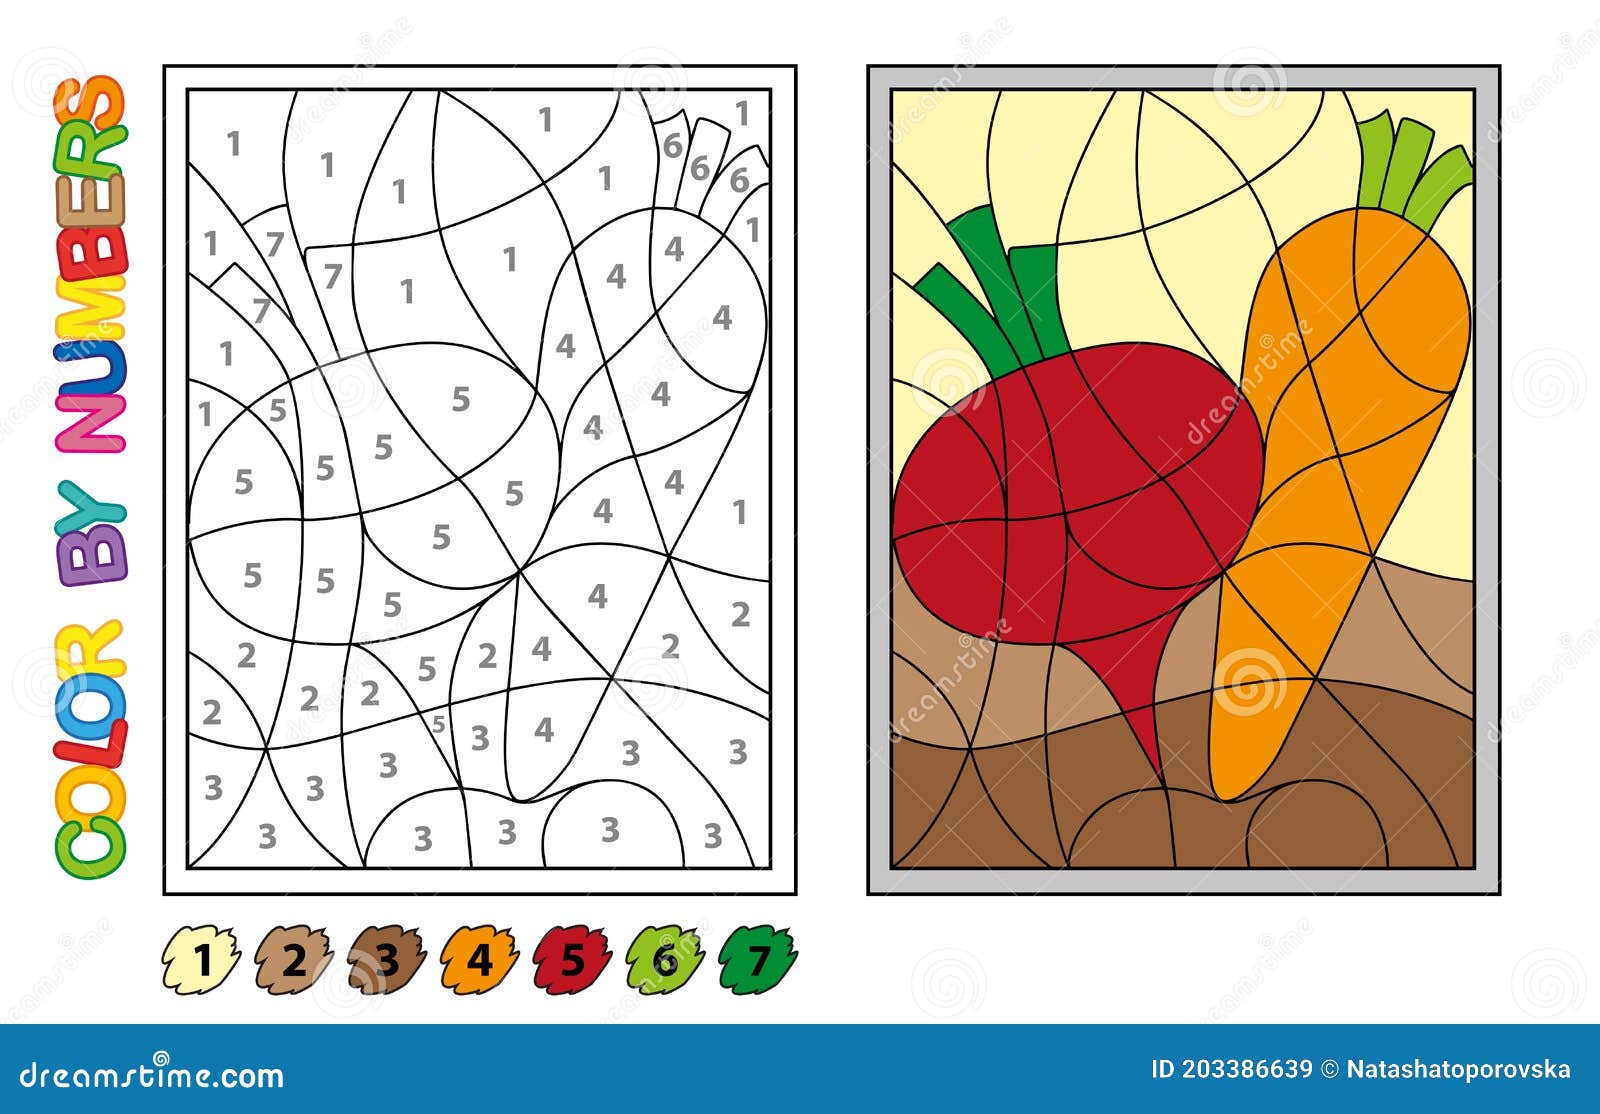 Pintamos Por Números. Juego De Rompecabezas Para La Educación Infantil. Números Y Colores Para Dibujar Y Aprender Matemáticas. Vec del Vector - Ilustración de zanahoria, agricultura: 203386639